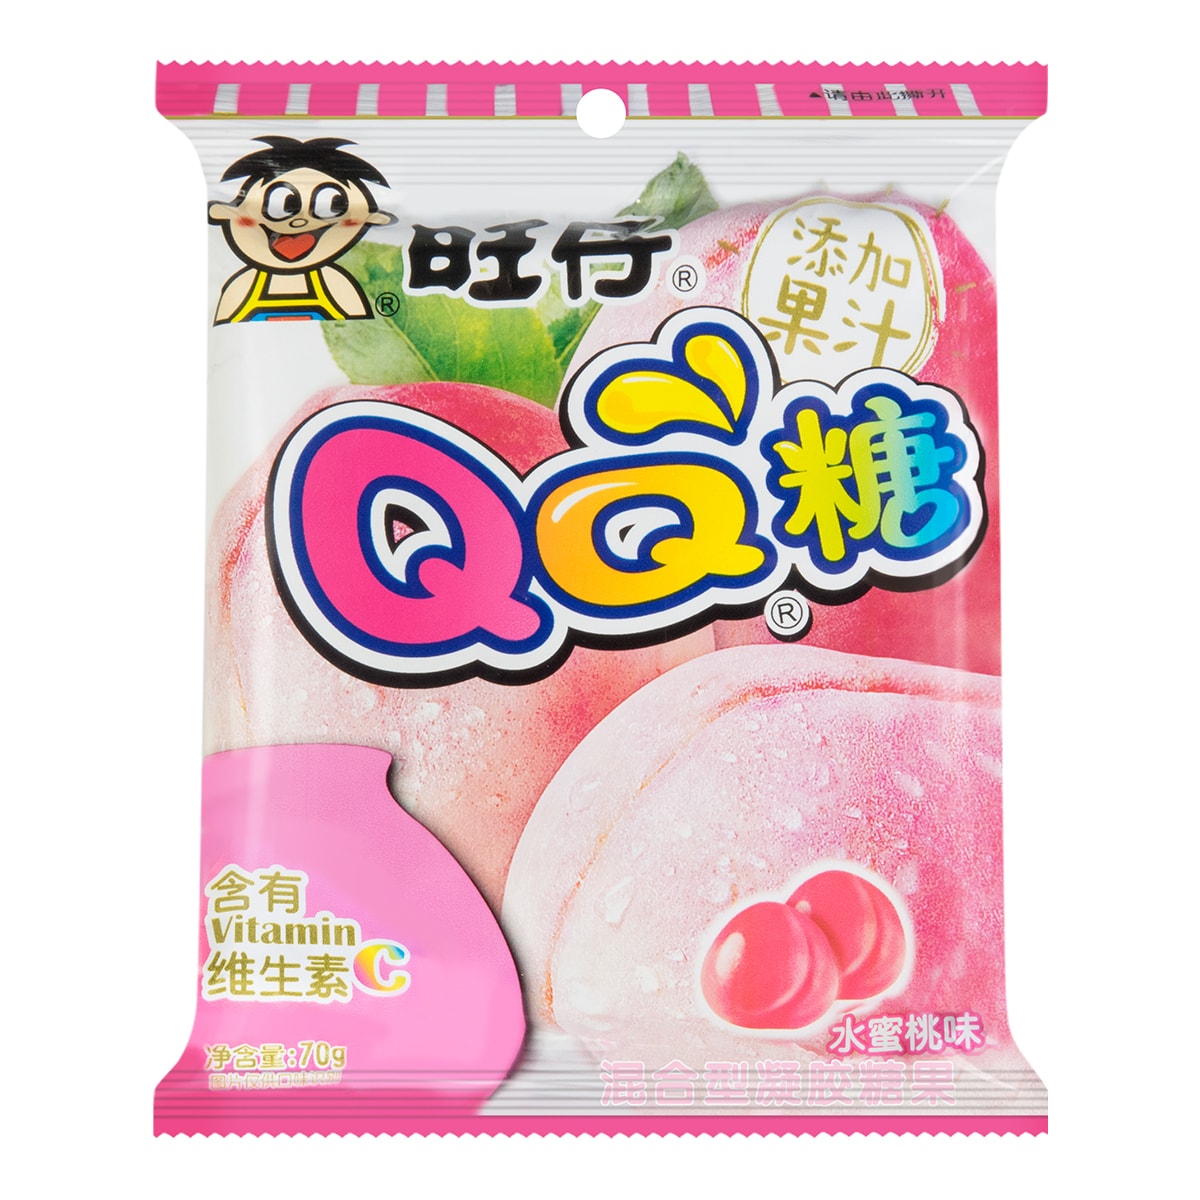 台湾旺旺旺仔qq糖混合胶型凝胶糖果水蜜桃味70g怎么样